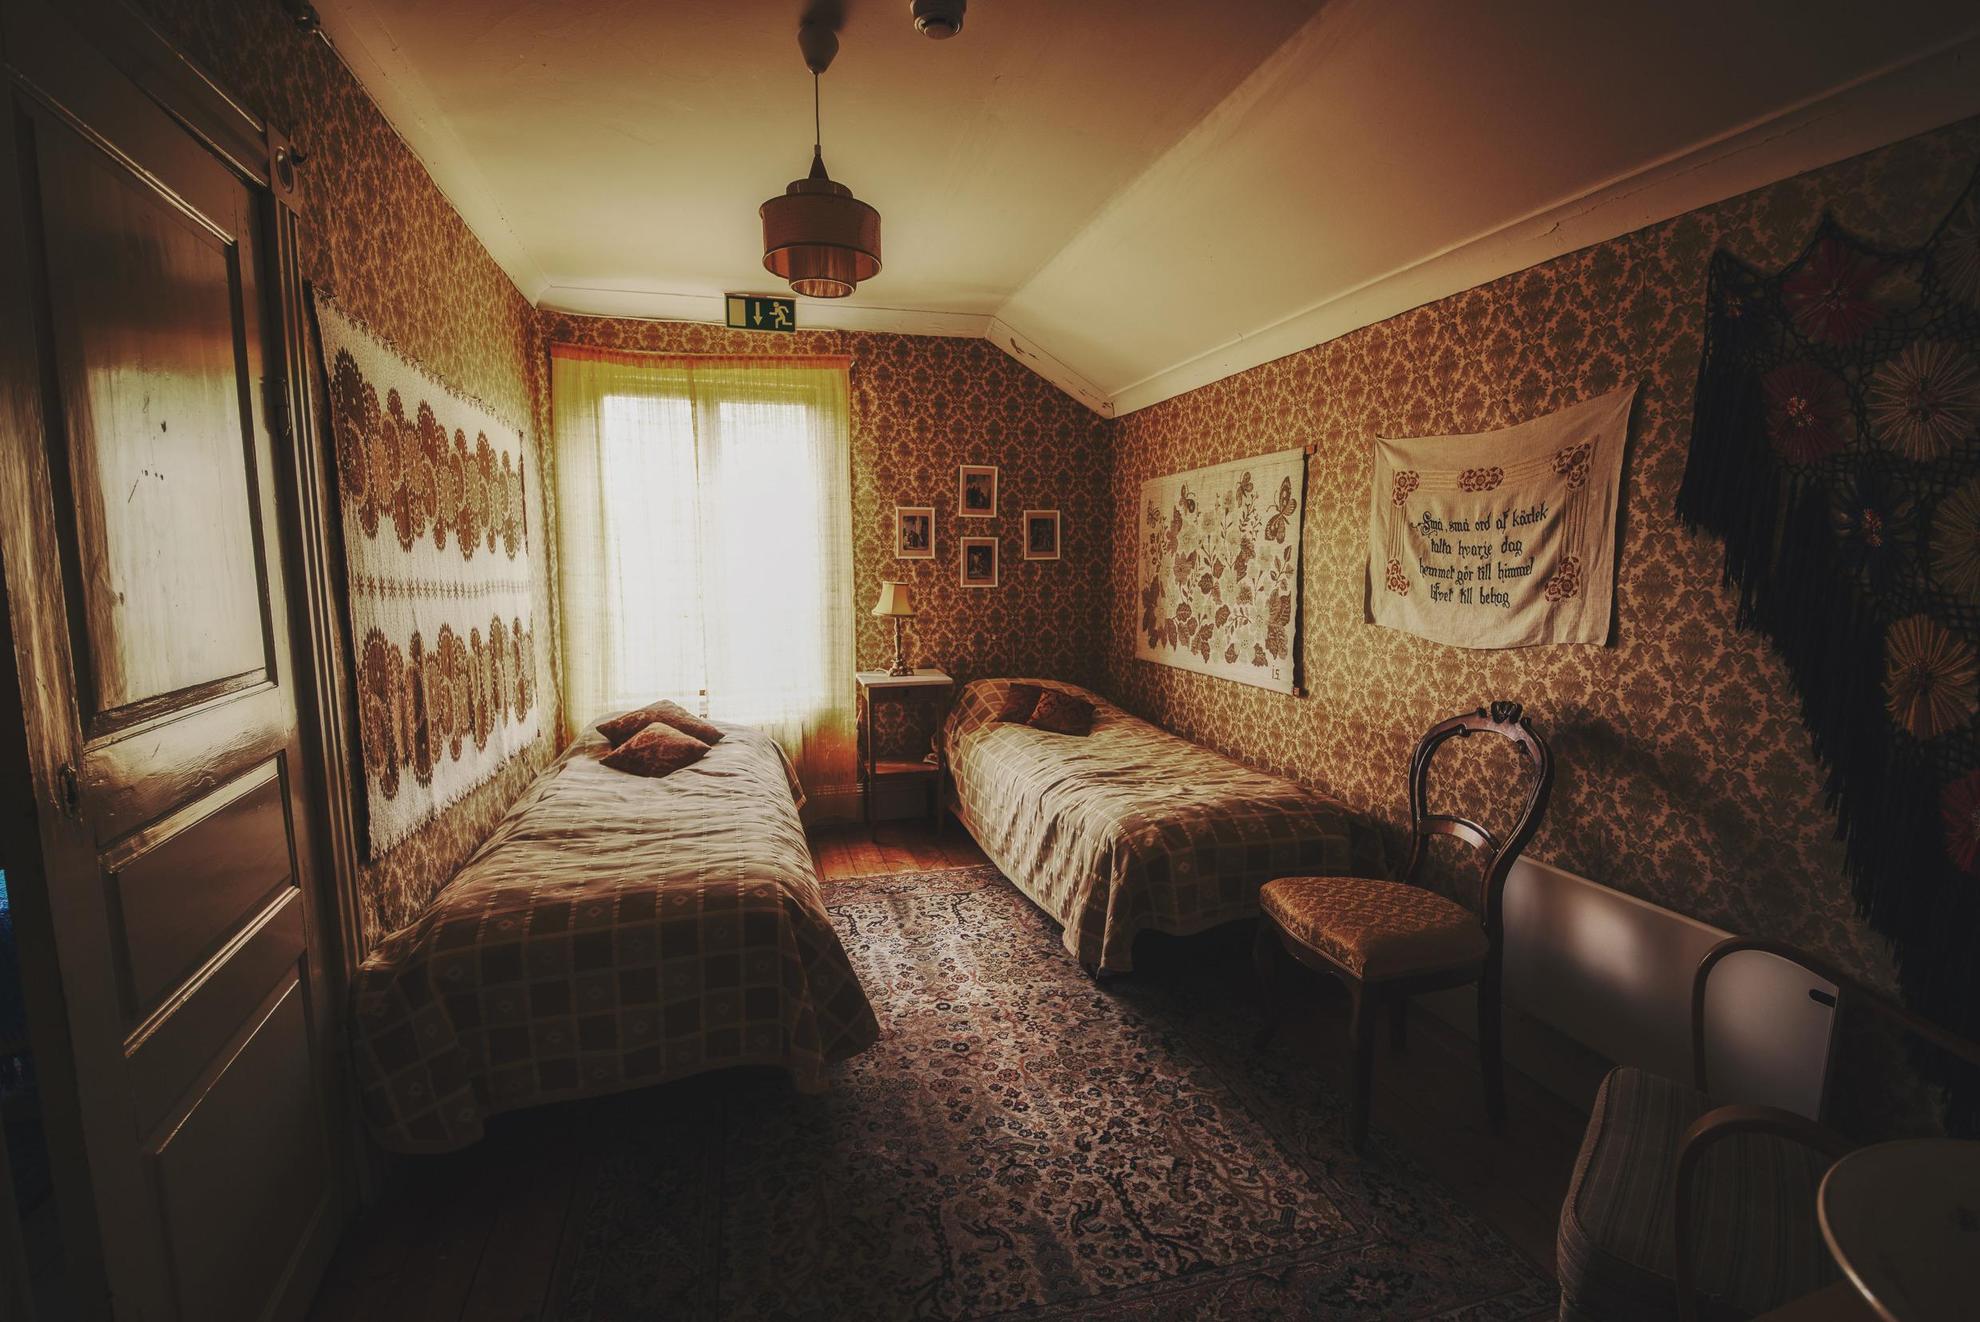 Ein Zimmer mit dekorativer Tapete, Gemälden, einem Teppich, einem Stuhl und zwei Einzelbetten.